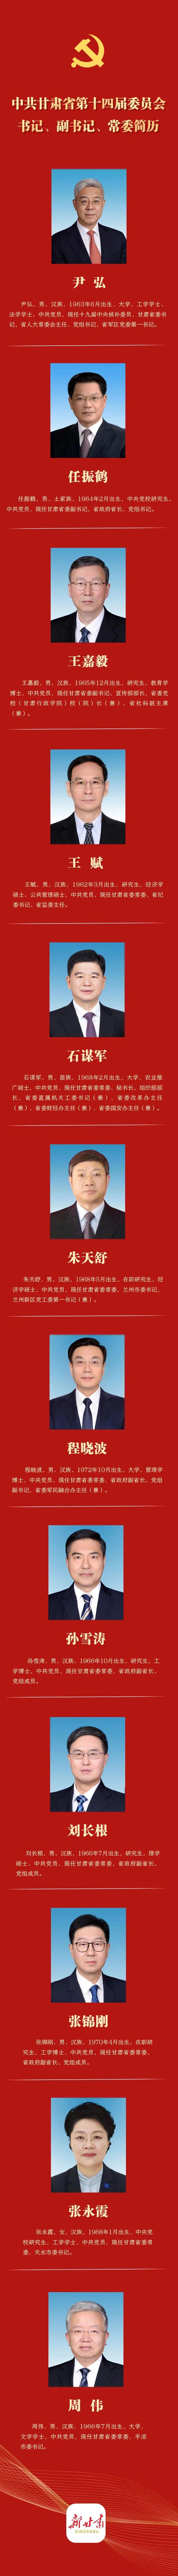 新一届甘肃省委书记、副书记、常委名单（简历、照片）